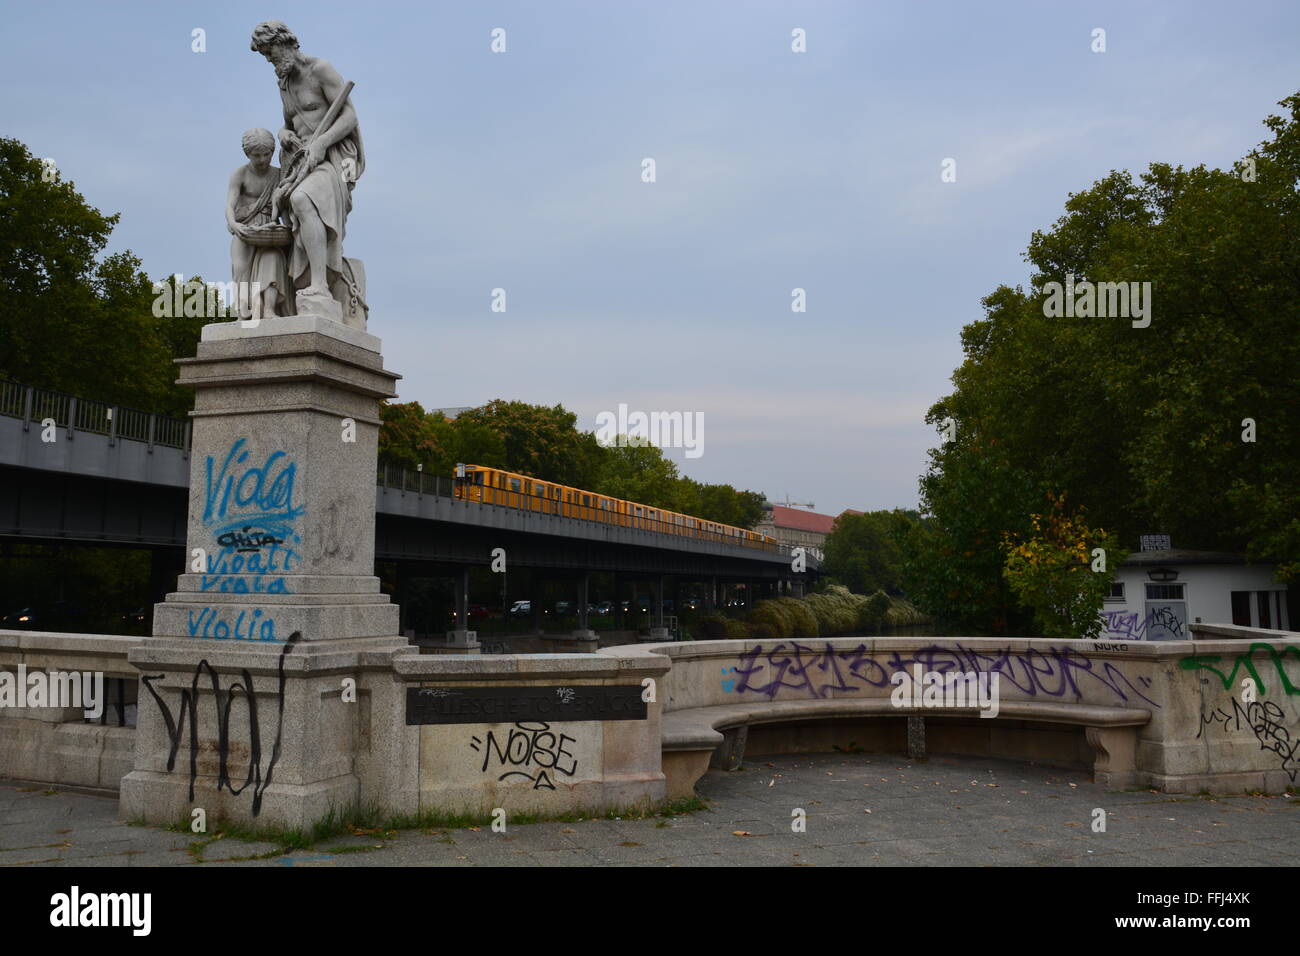 Graffiti deckt ein Geländer, Bank und Statue base neben einer Haltestelle in Berlin, Deutschland. Stockfoto